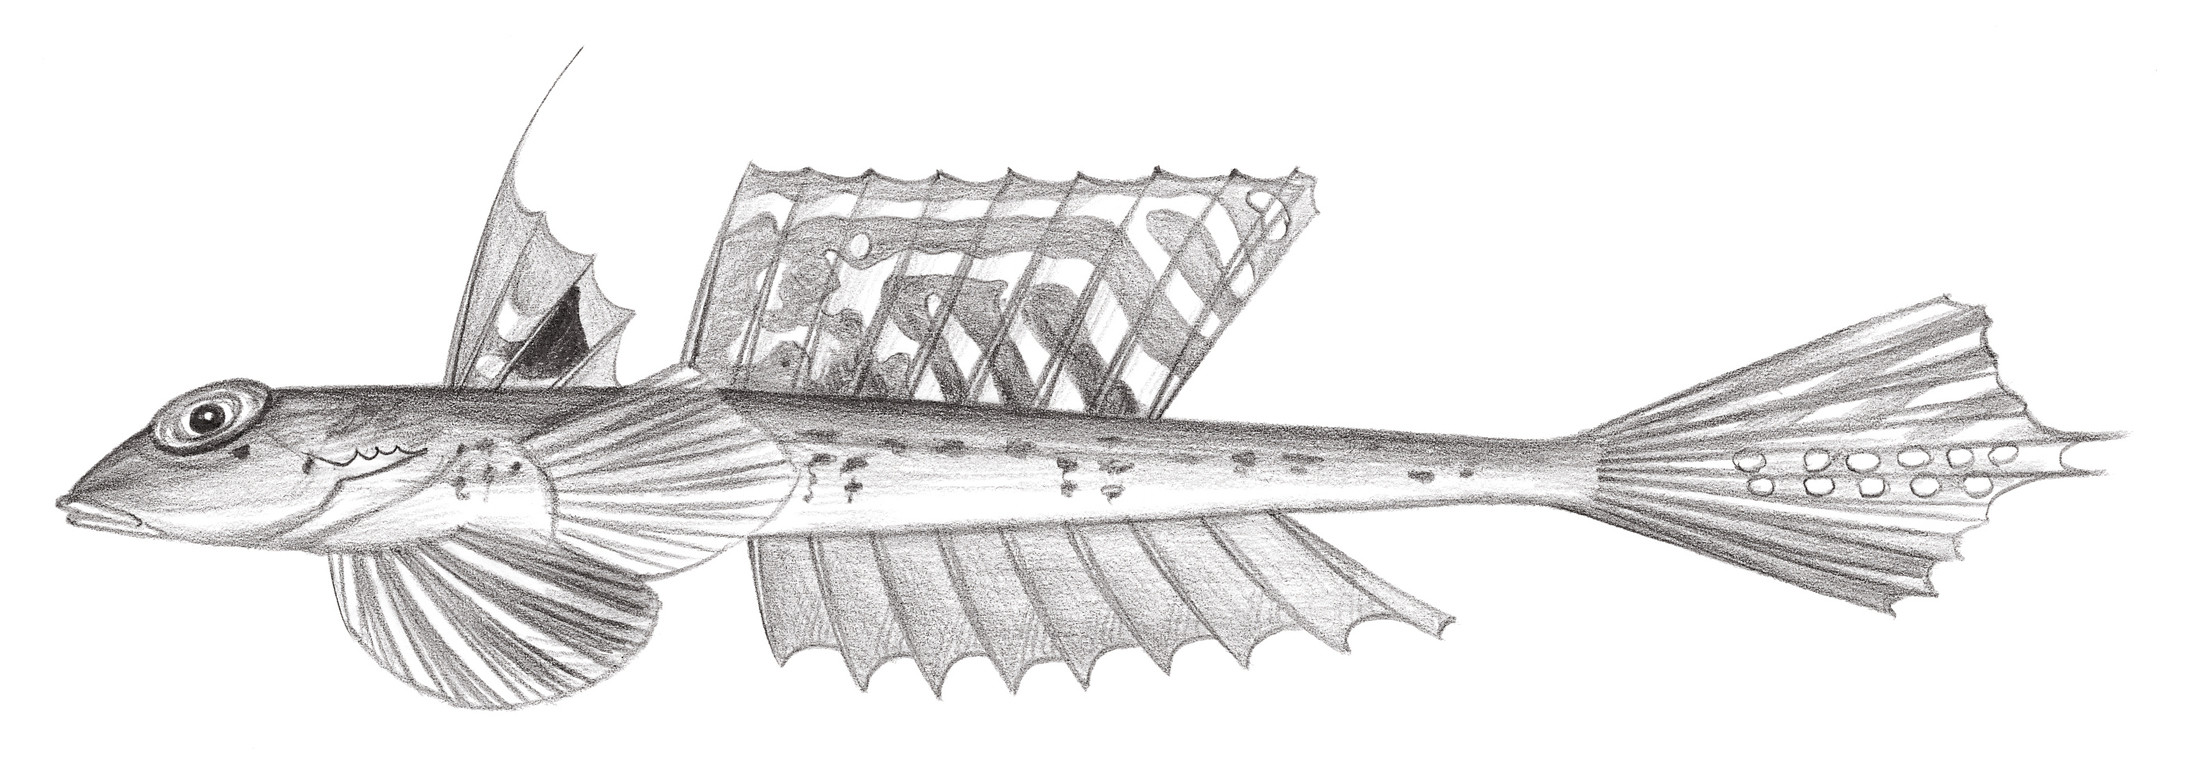 2012.	深海 Bathycallionymus kaianus (Günther, 1880)